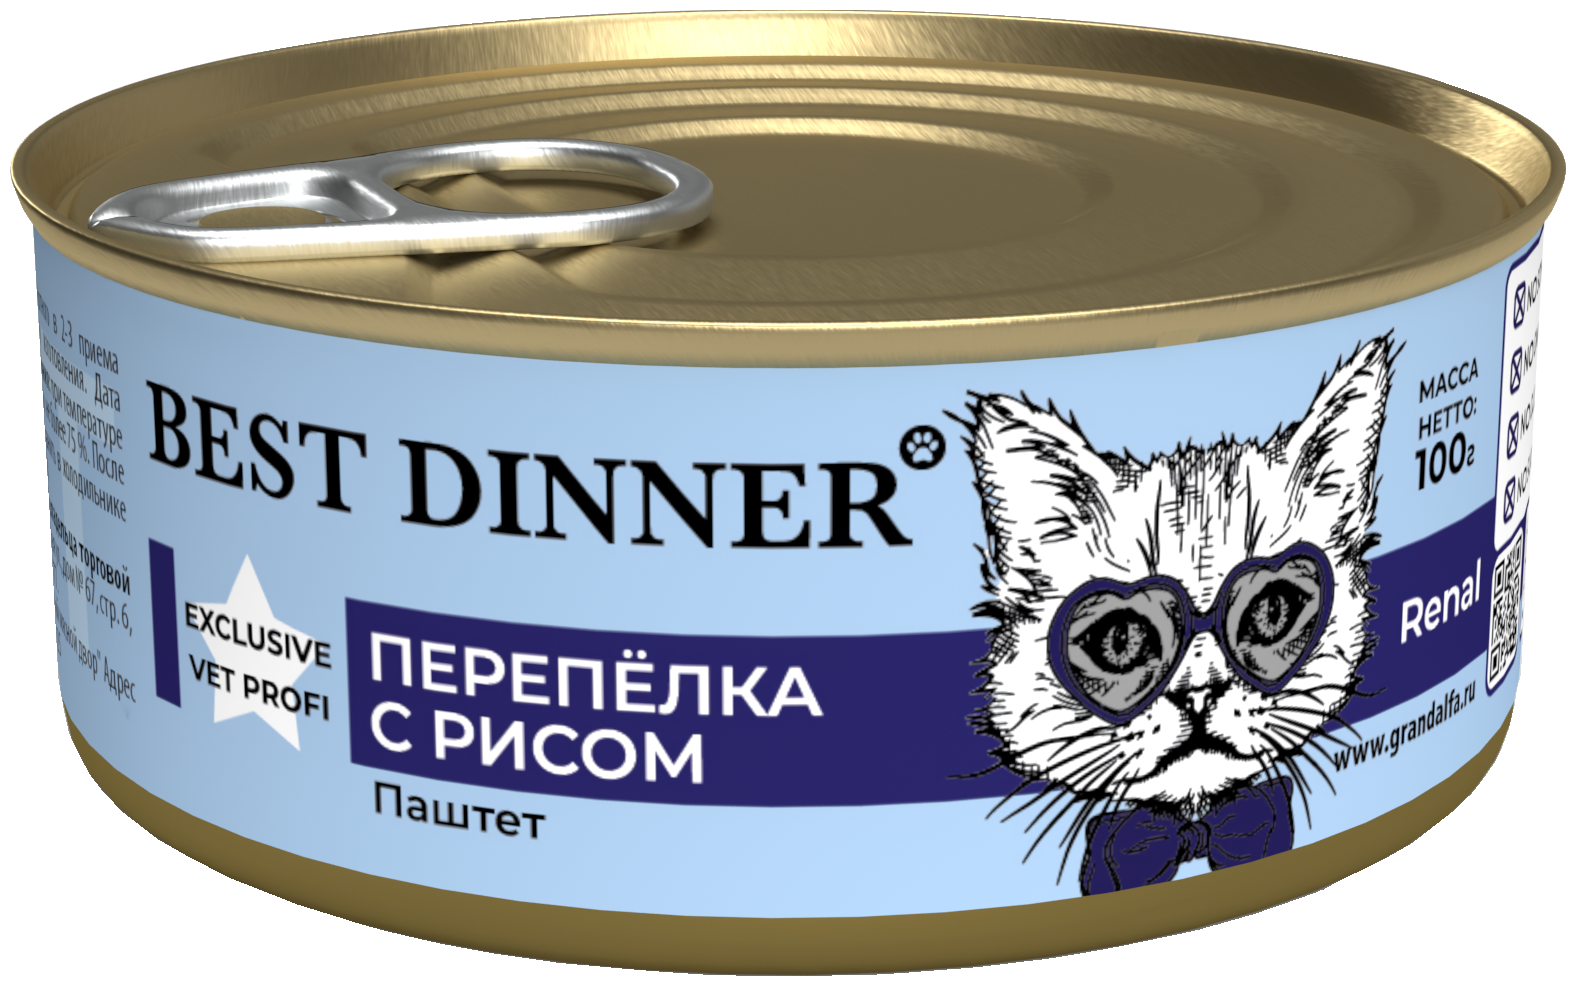 Консервы для кошек Best Dinner Exclusive Vet Profi Renal Перепелка с рисом 0,1кг - фотография № 1